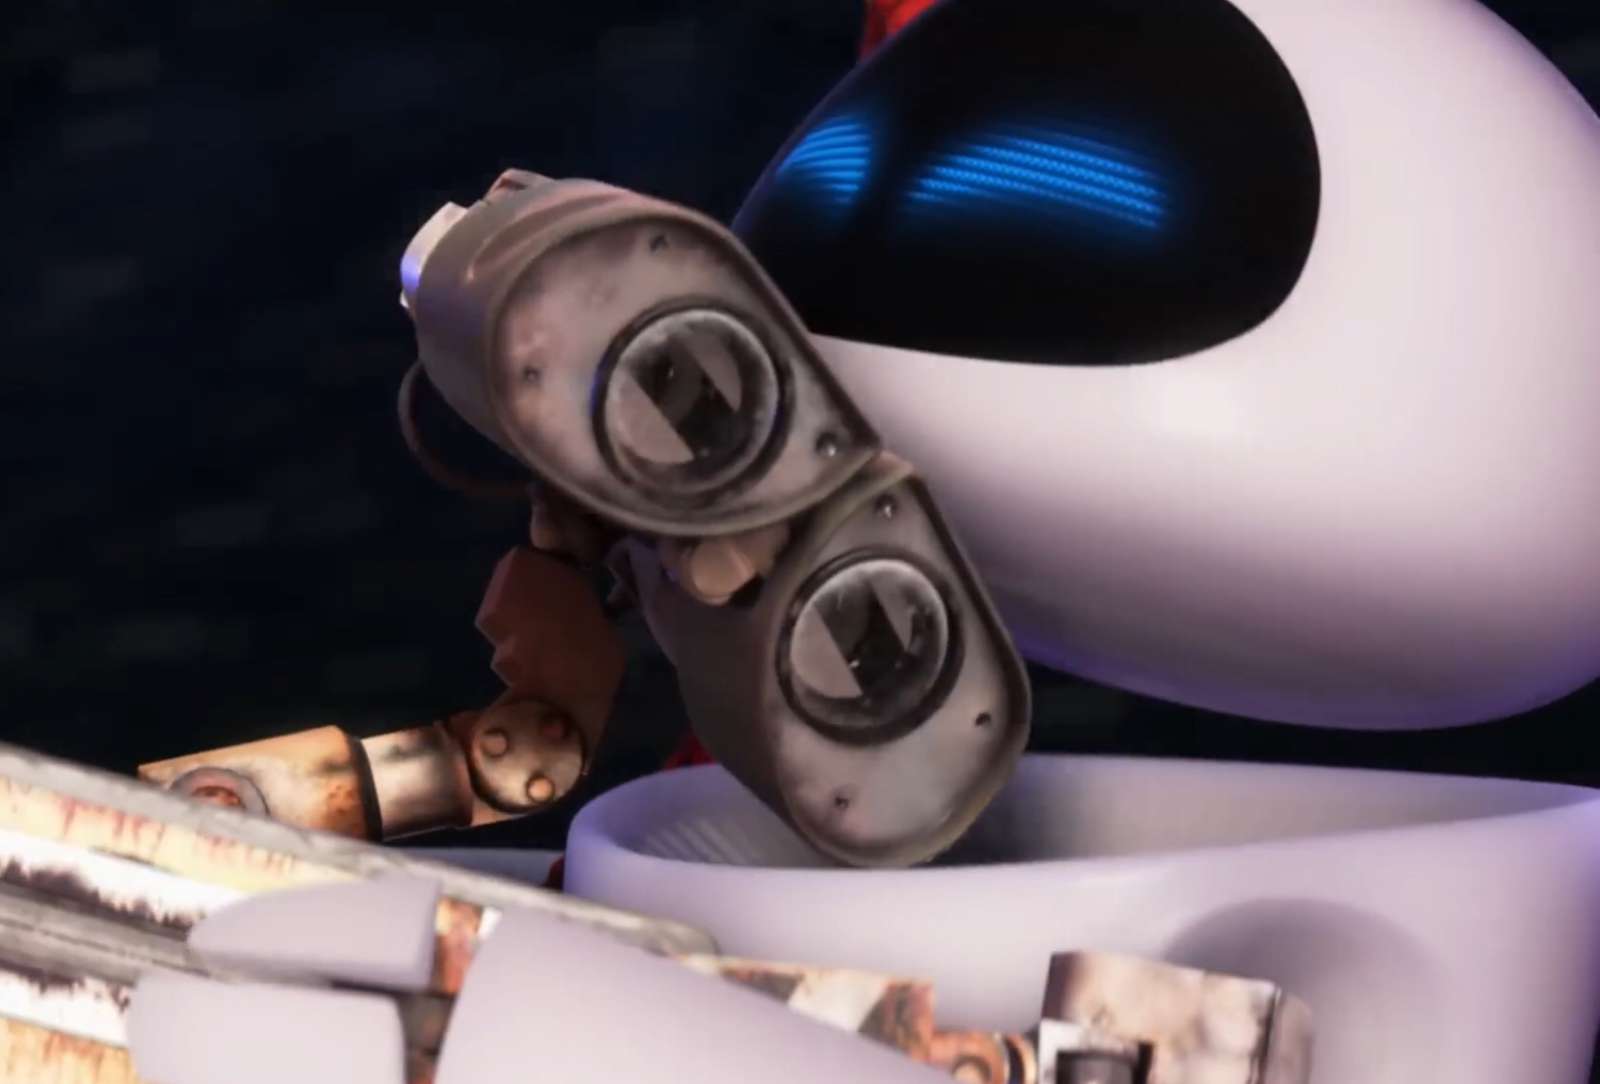 WALL-E X Eve❤️❤️❤️❤️❤️❤️❤️ online puzzel